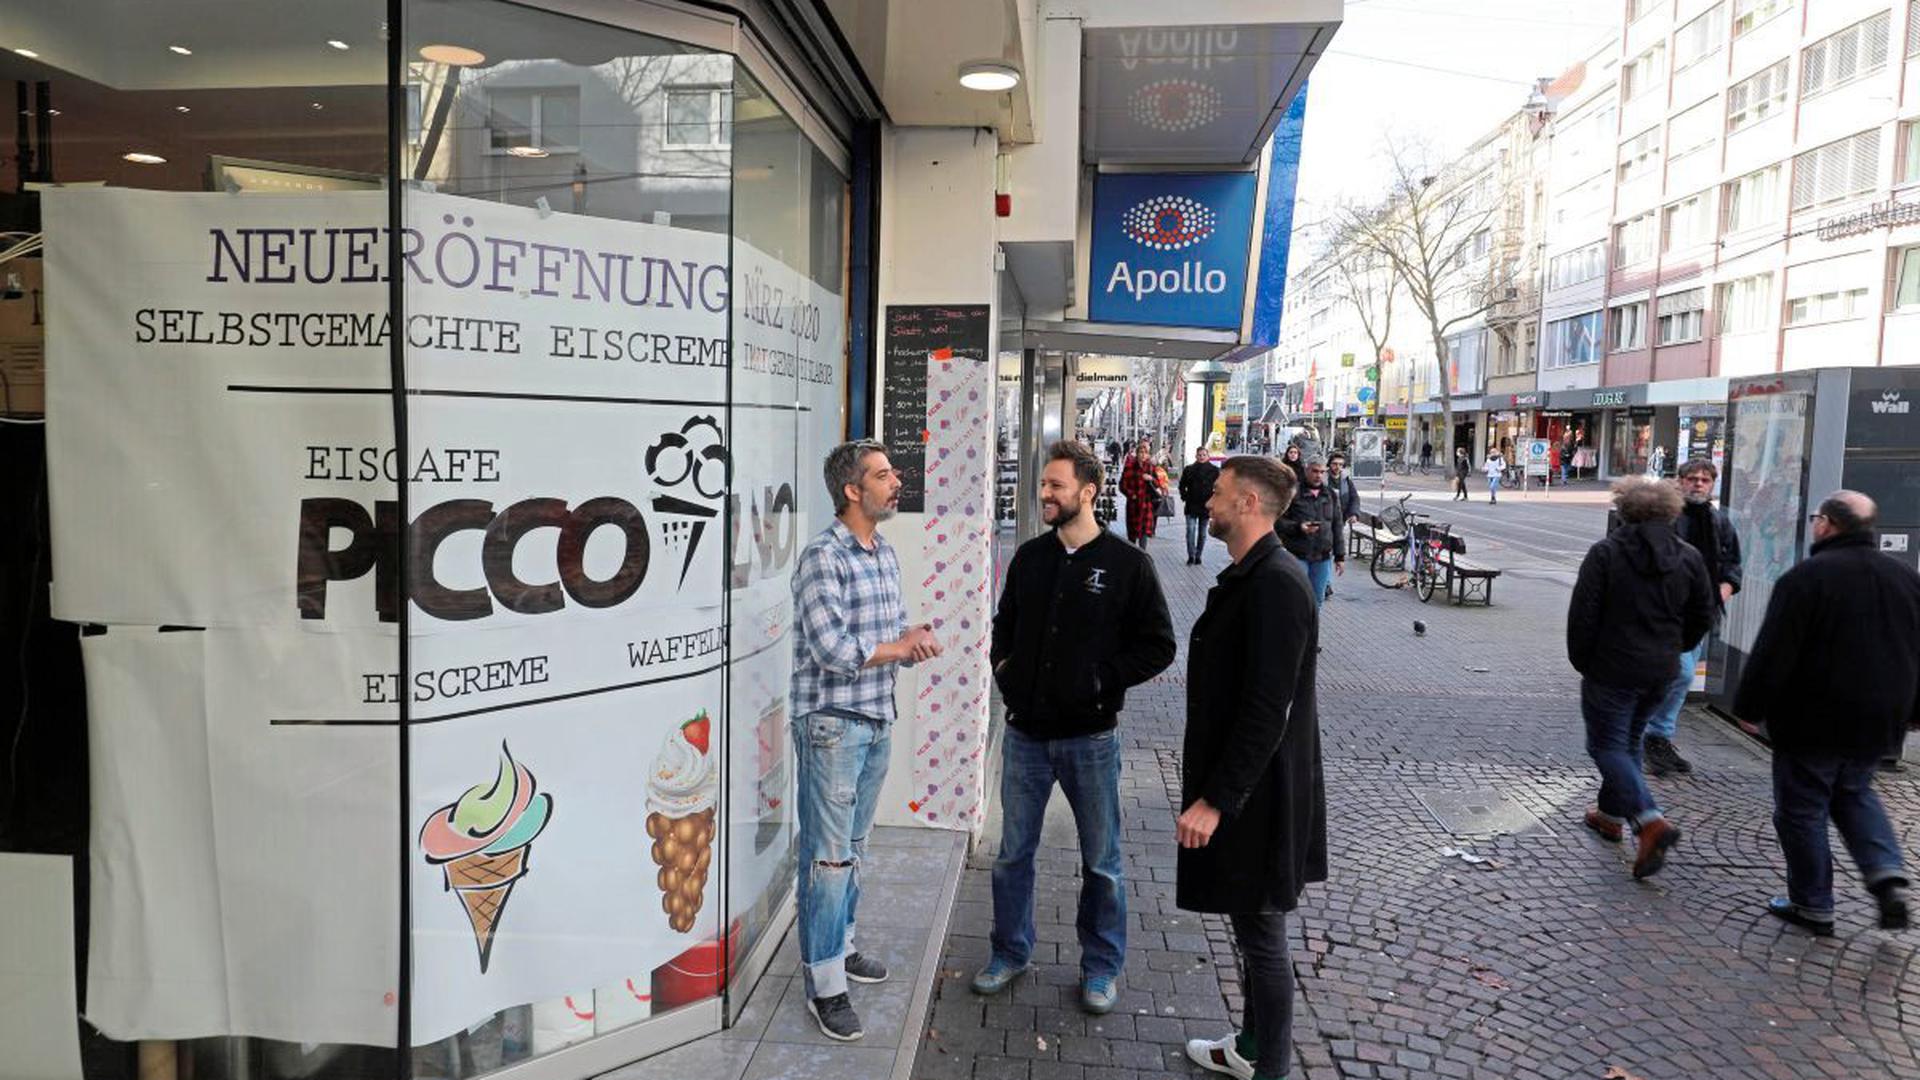 Italienische Spezialitäten will Francesco Indirli (Mitte) mit Geschäftspartner Thorsten Röll (rechts) und Eis-Meister Tiago Lorenzo (links) in der Kaiserstraße bieten. Er hofft, nun mit Eis statt Pizza die Nachfrage nach To-Go-Angeboten besser zu bedienen.